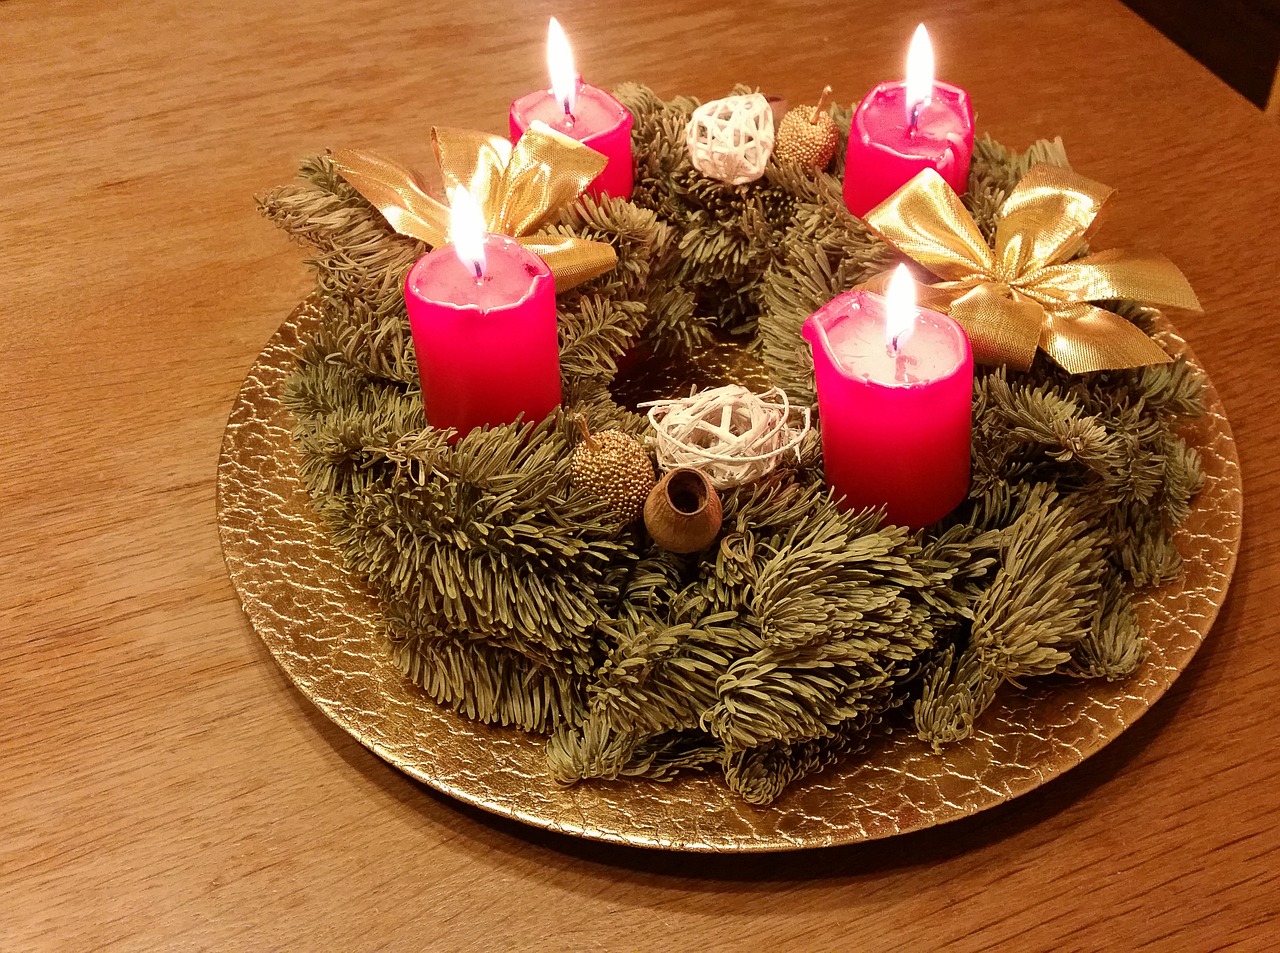 altezza: 29 cm ukiyo Confezione da 6 candele rustiche colori assortiti compleanno candele dell'Avvento Natale durata 12 ore diametro: 2,2 cm colore: Avorio 